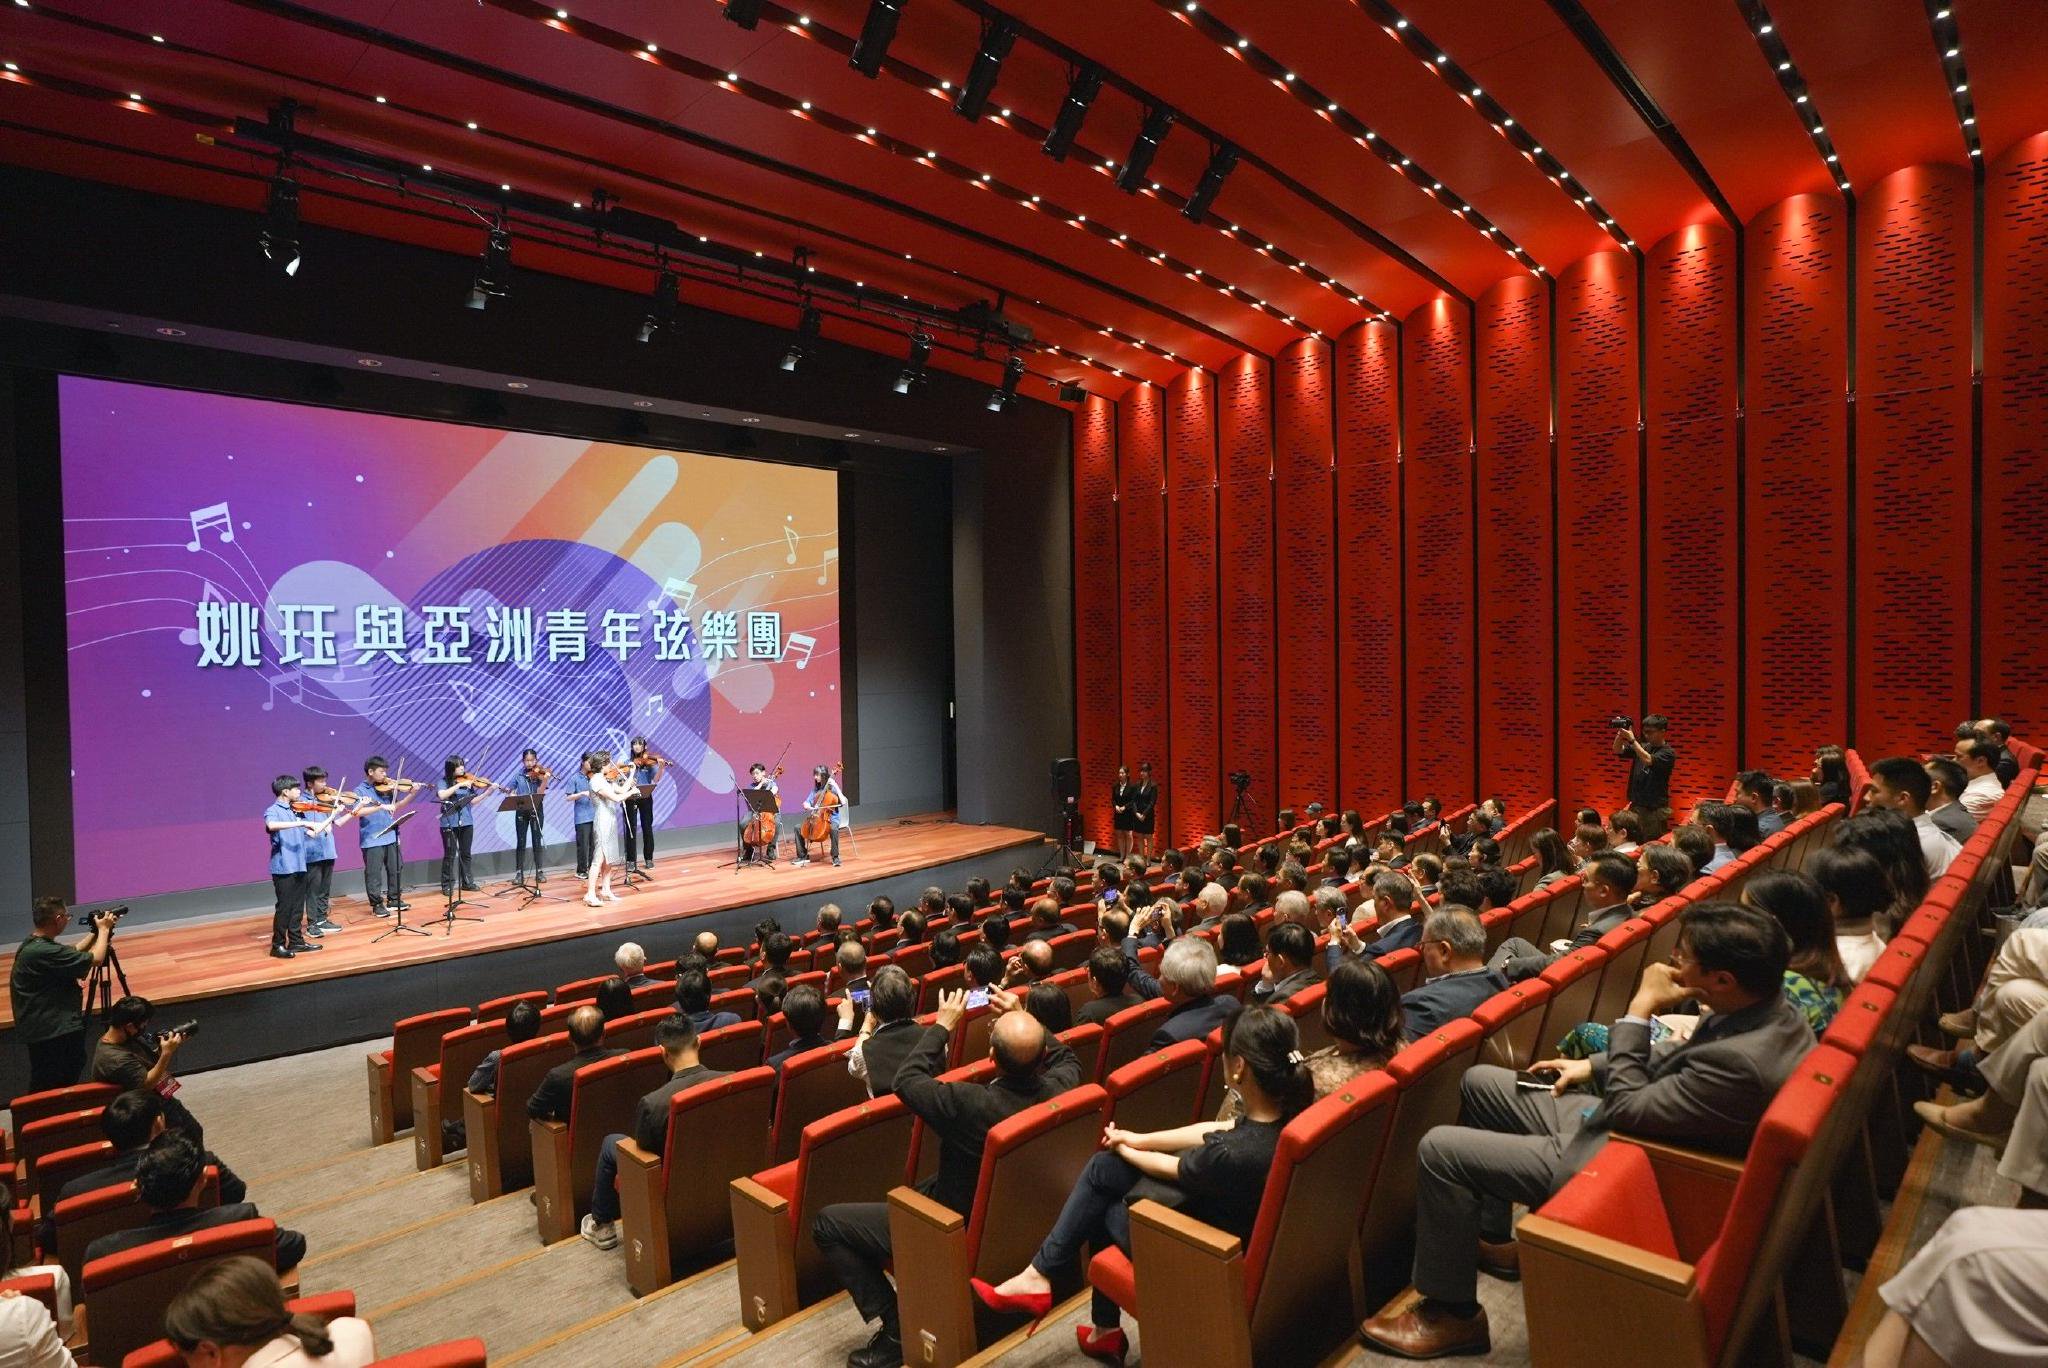 姚珏带领亚洲青年弦乐团，演奏《我的中国心》。上海广播电视台 供图